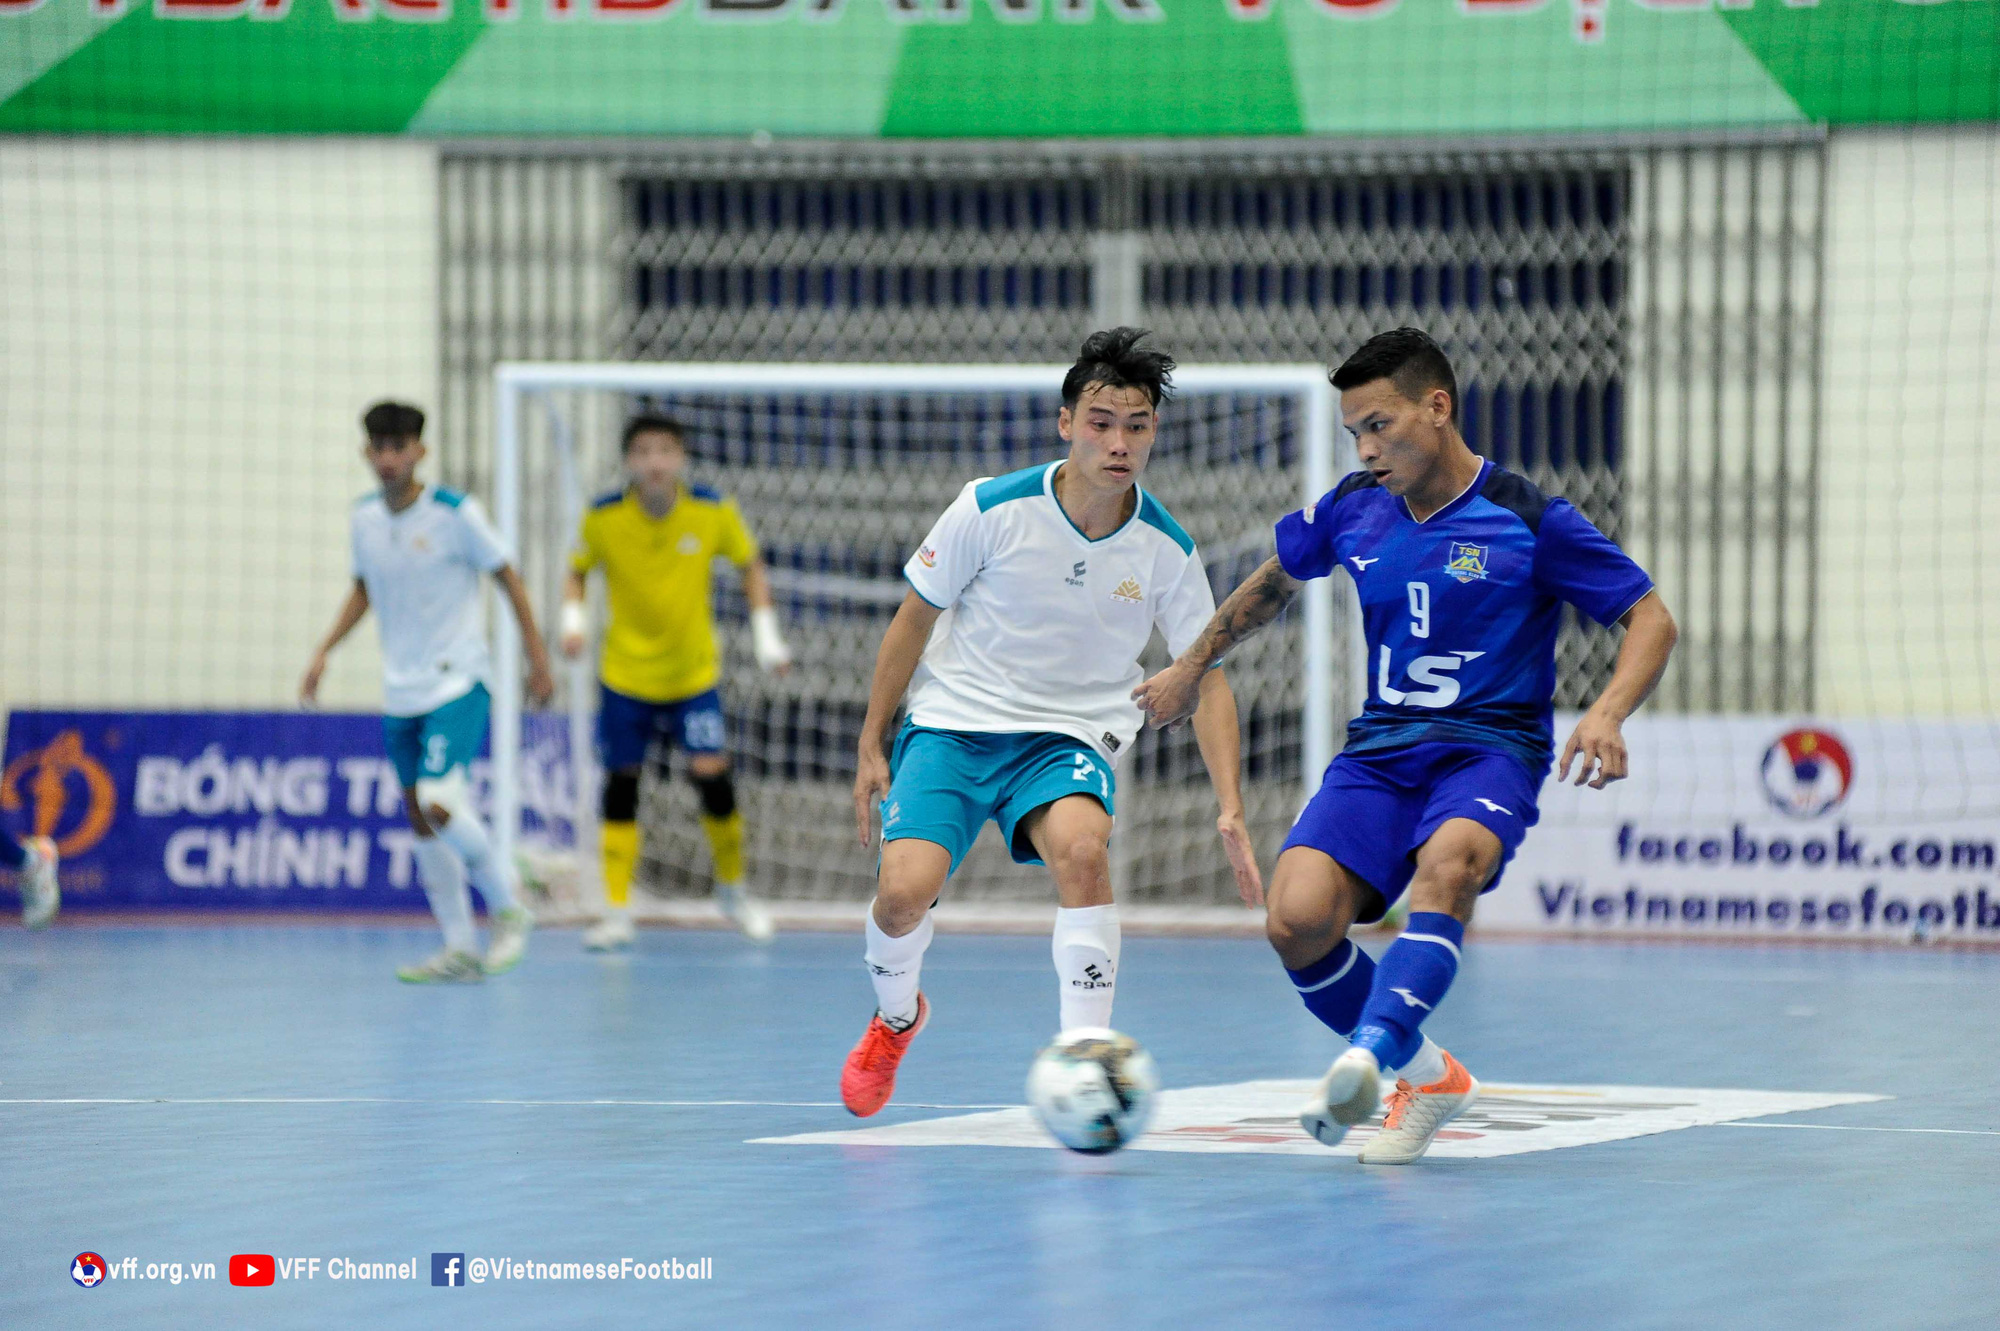 Vòng 9 giải futsal HDBank VĐQG 2022 (ngày 3/7): Thái Sơn Nam thắng đậm, S.Khánh Hòa lỡ cơ hội tăng hạng